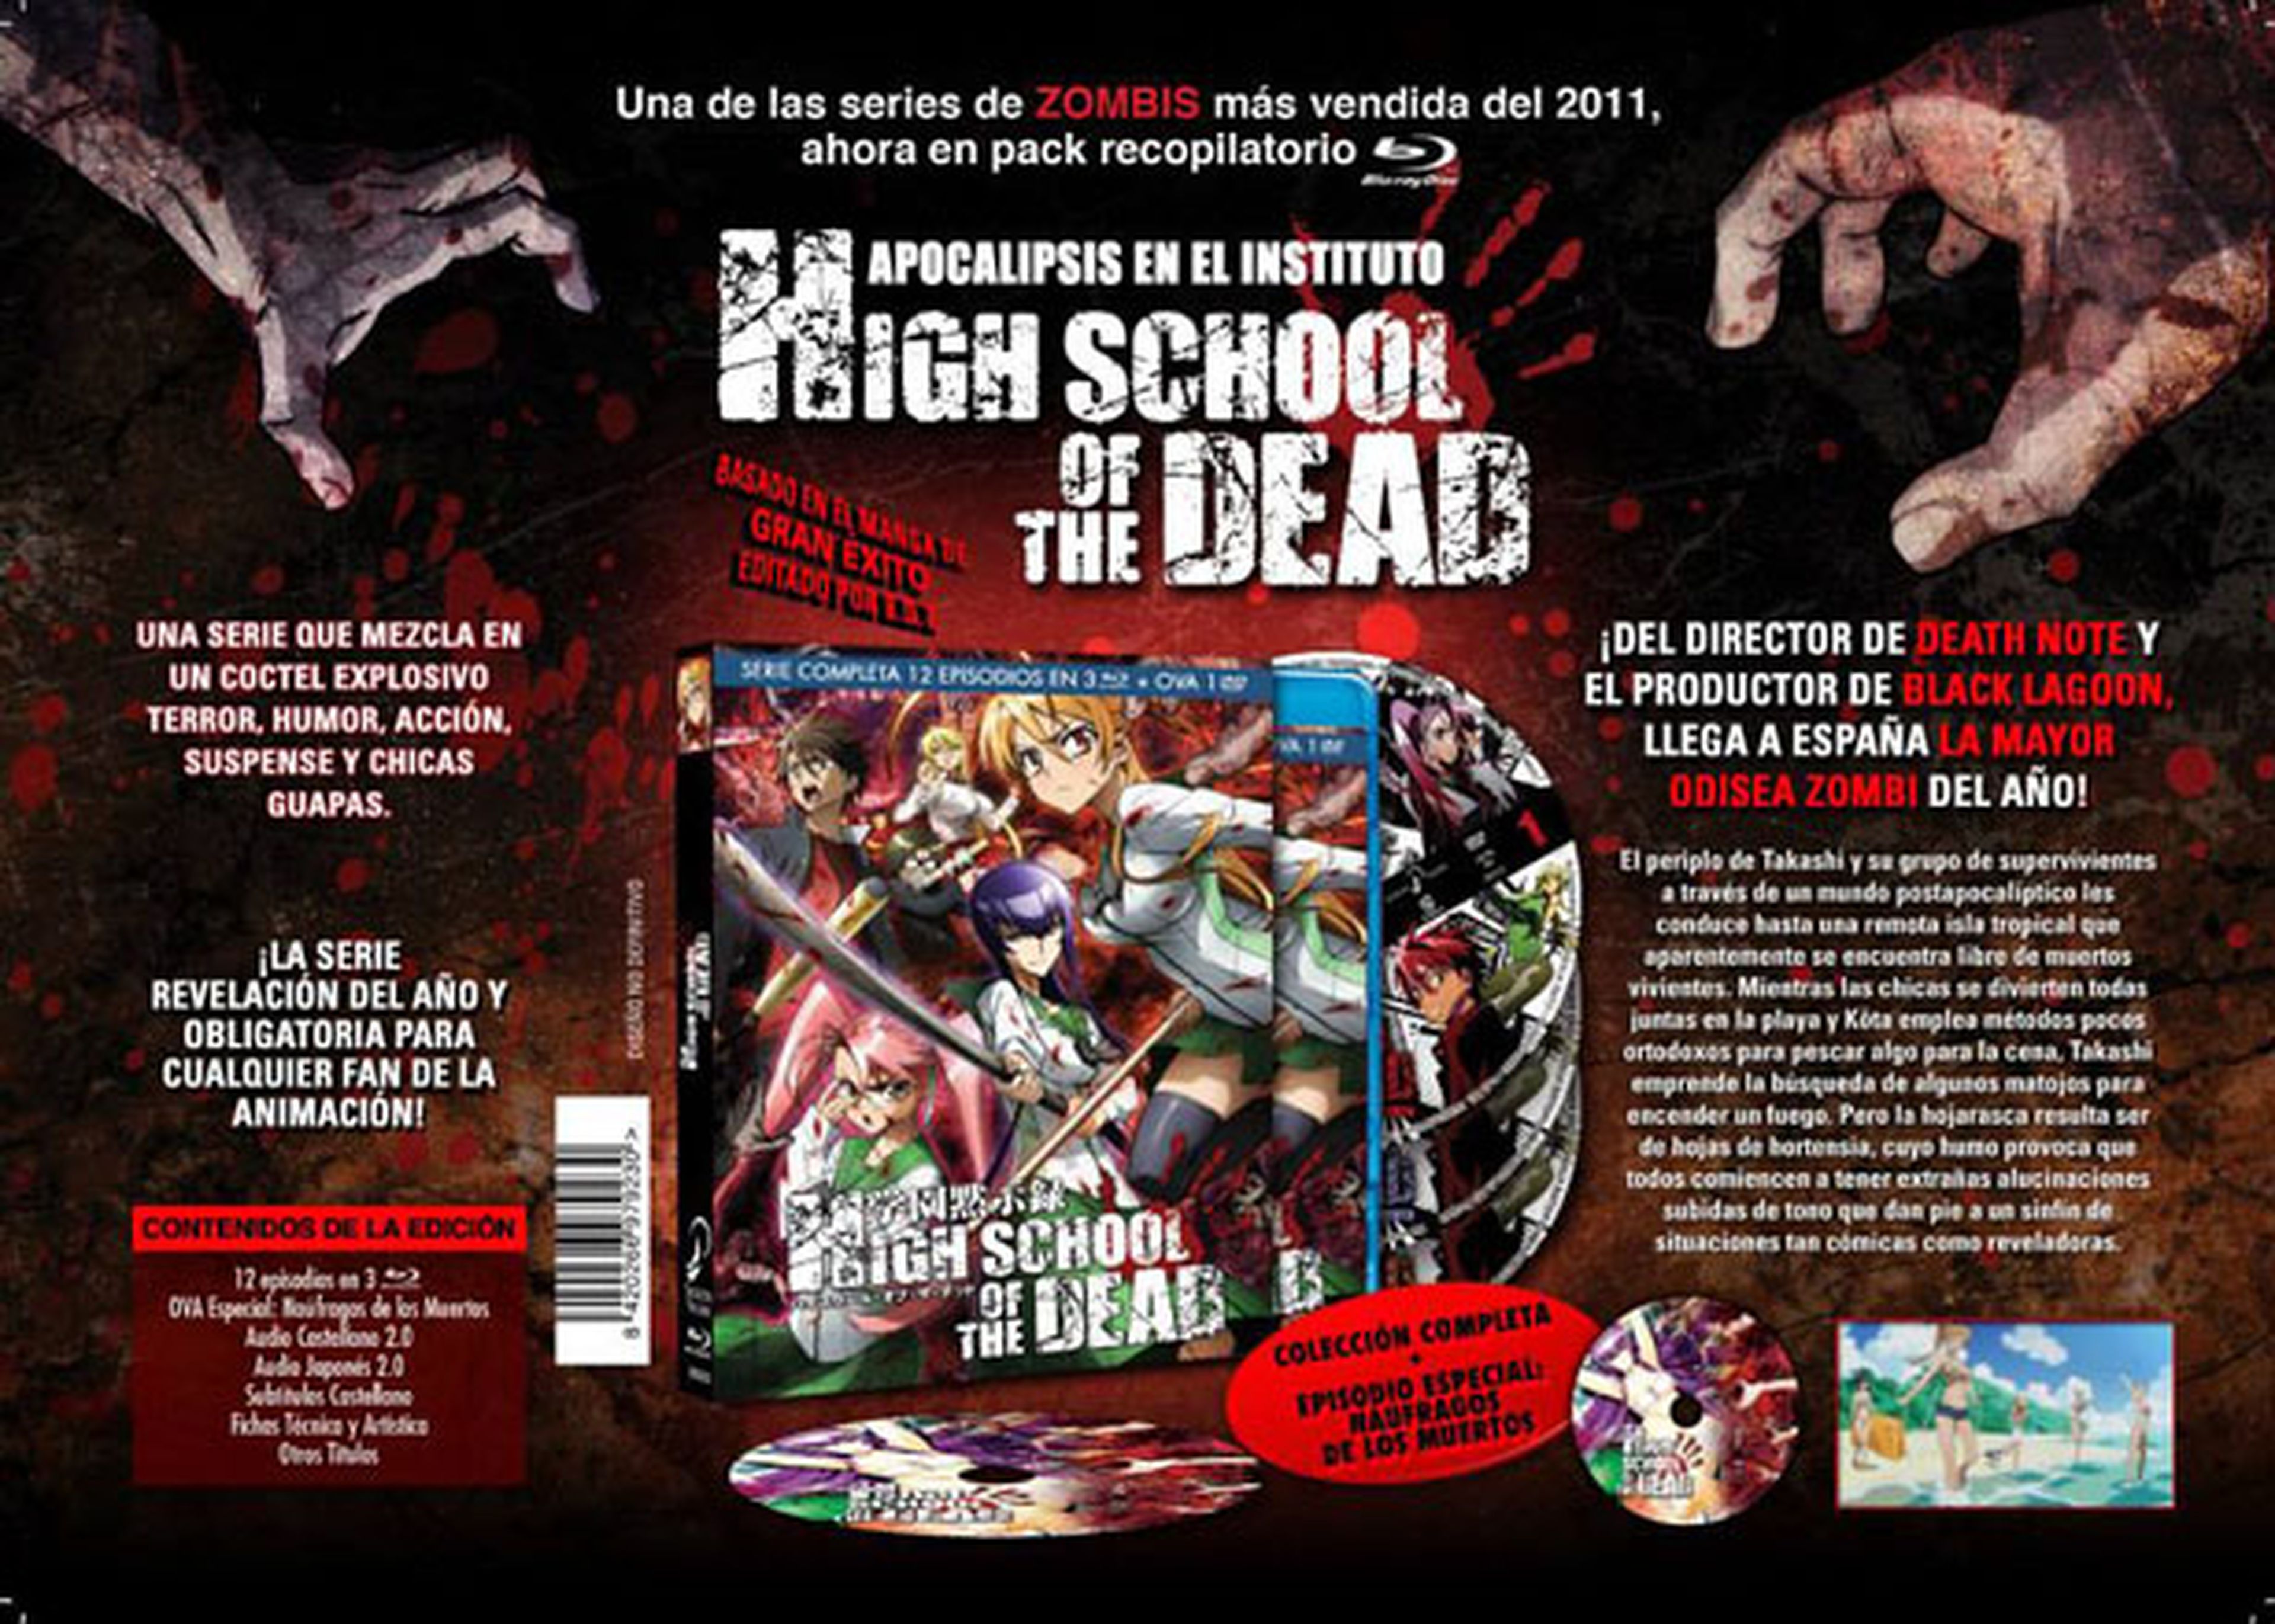 Edición integral de High School of the Dead en Blu-Ray